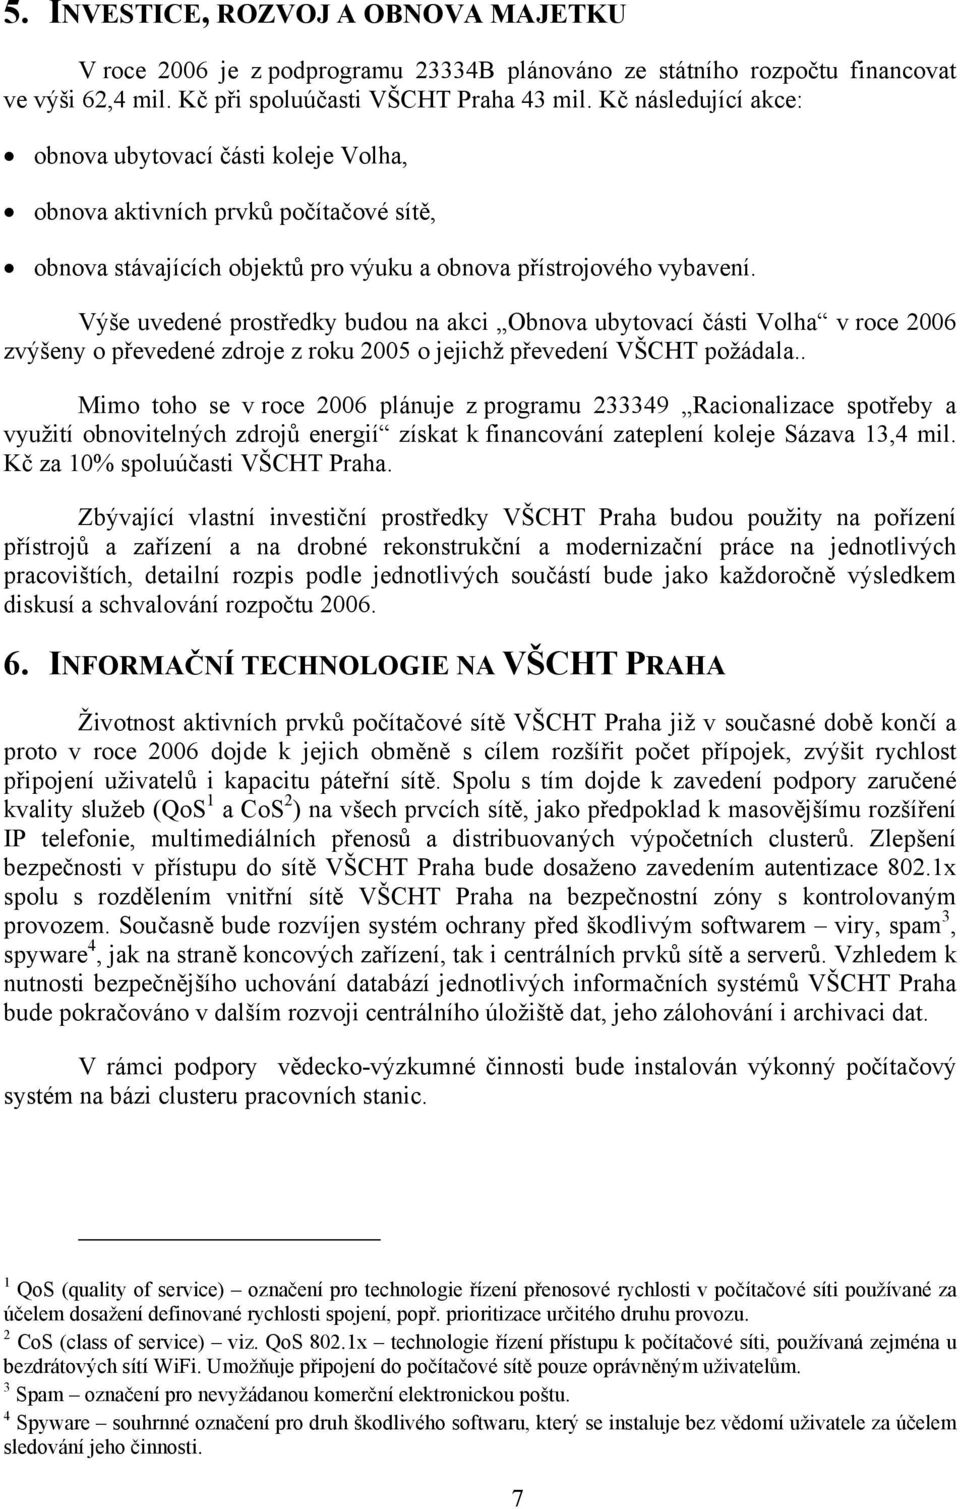 Výše uvedené prostředky budou na akci Obnova ubytovací části Volha v roce 2006 zvýšeny o převedené zdroje z roku 2005 o jejichž převedení VŠCHT požádala.